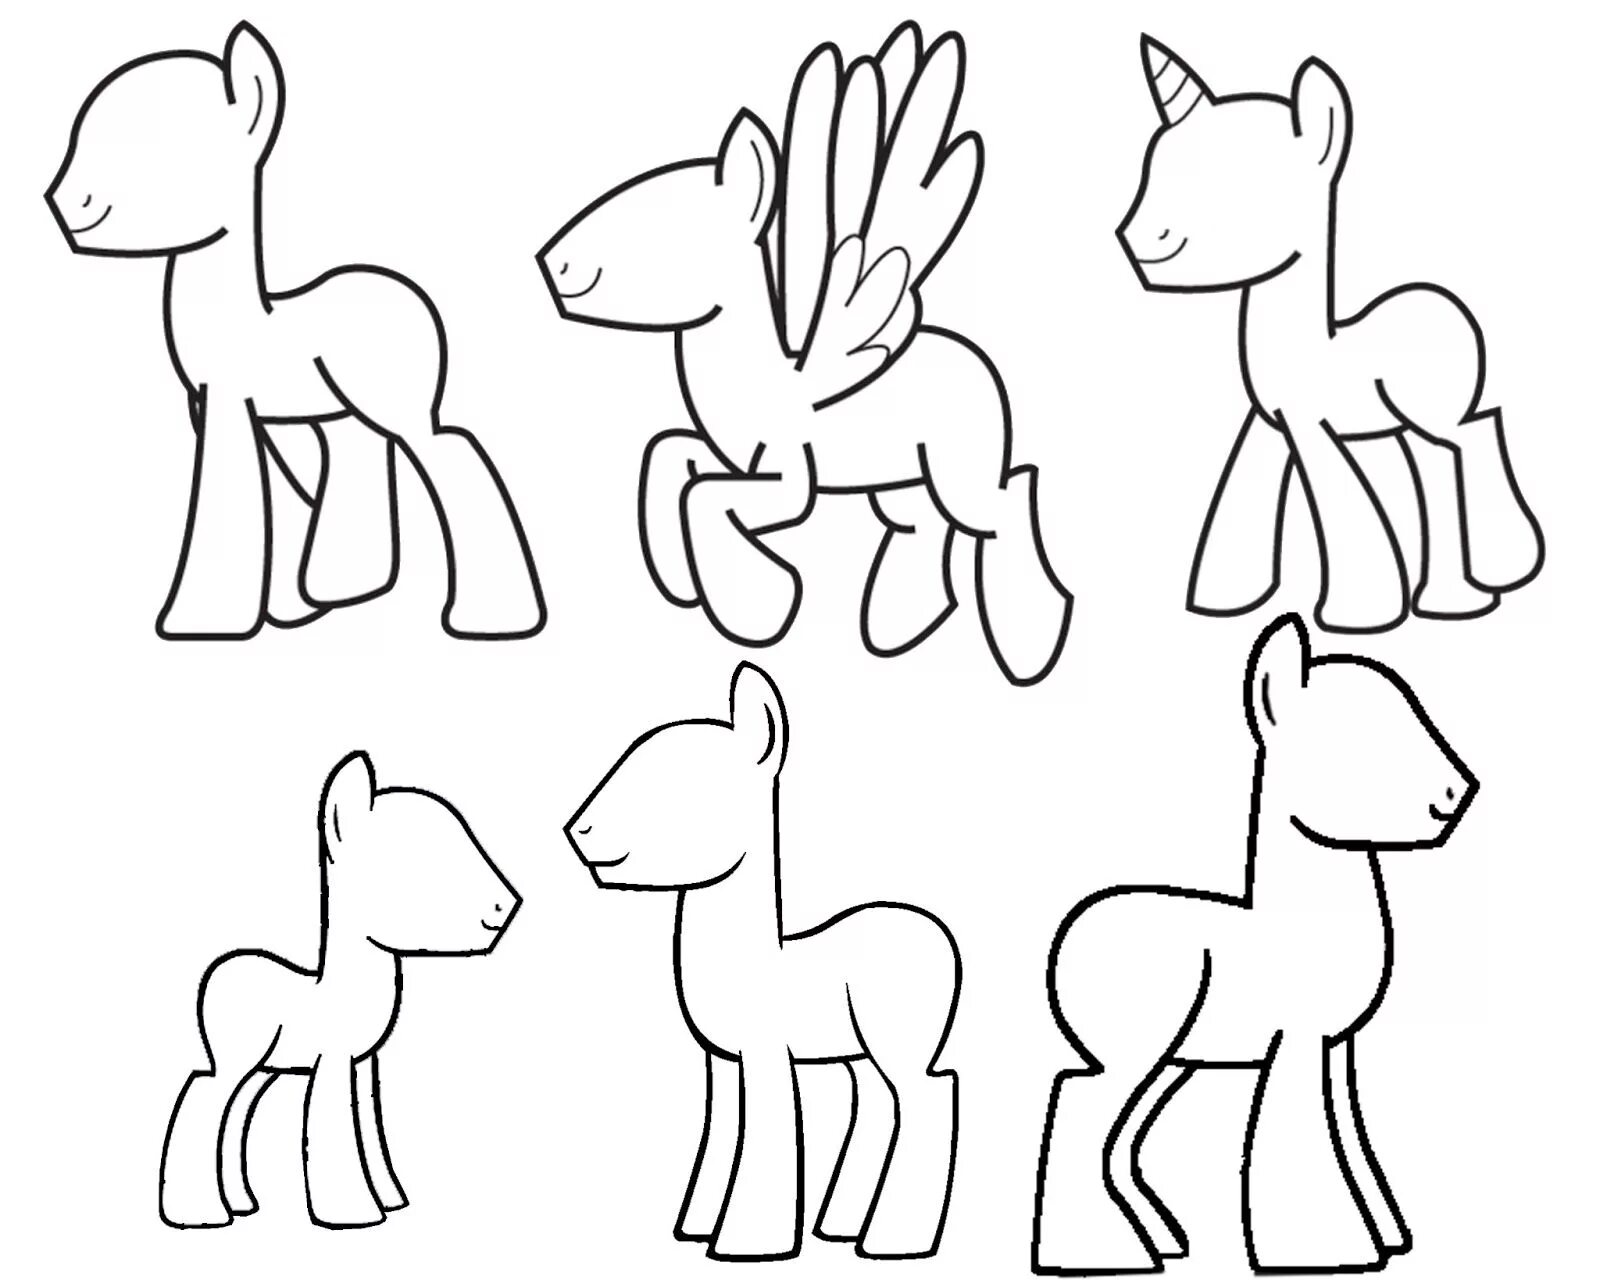 Ponying ru. Пони для рисования. Пони основа для рисования. Уроки рисования пони. Шаблоны для рисования.